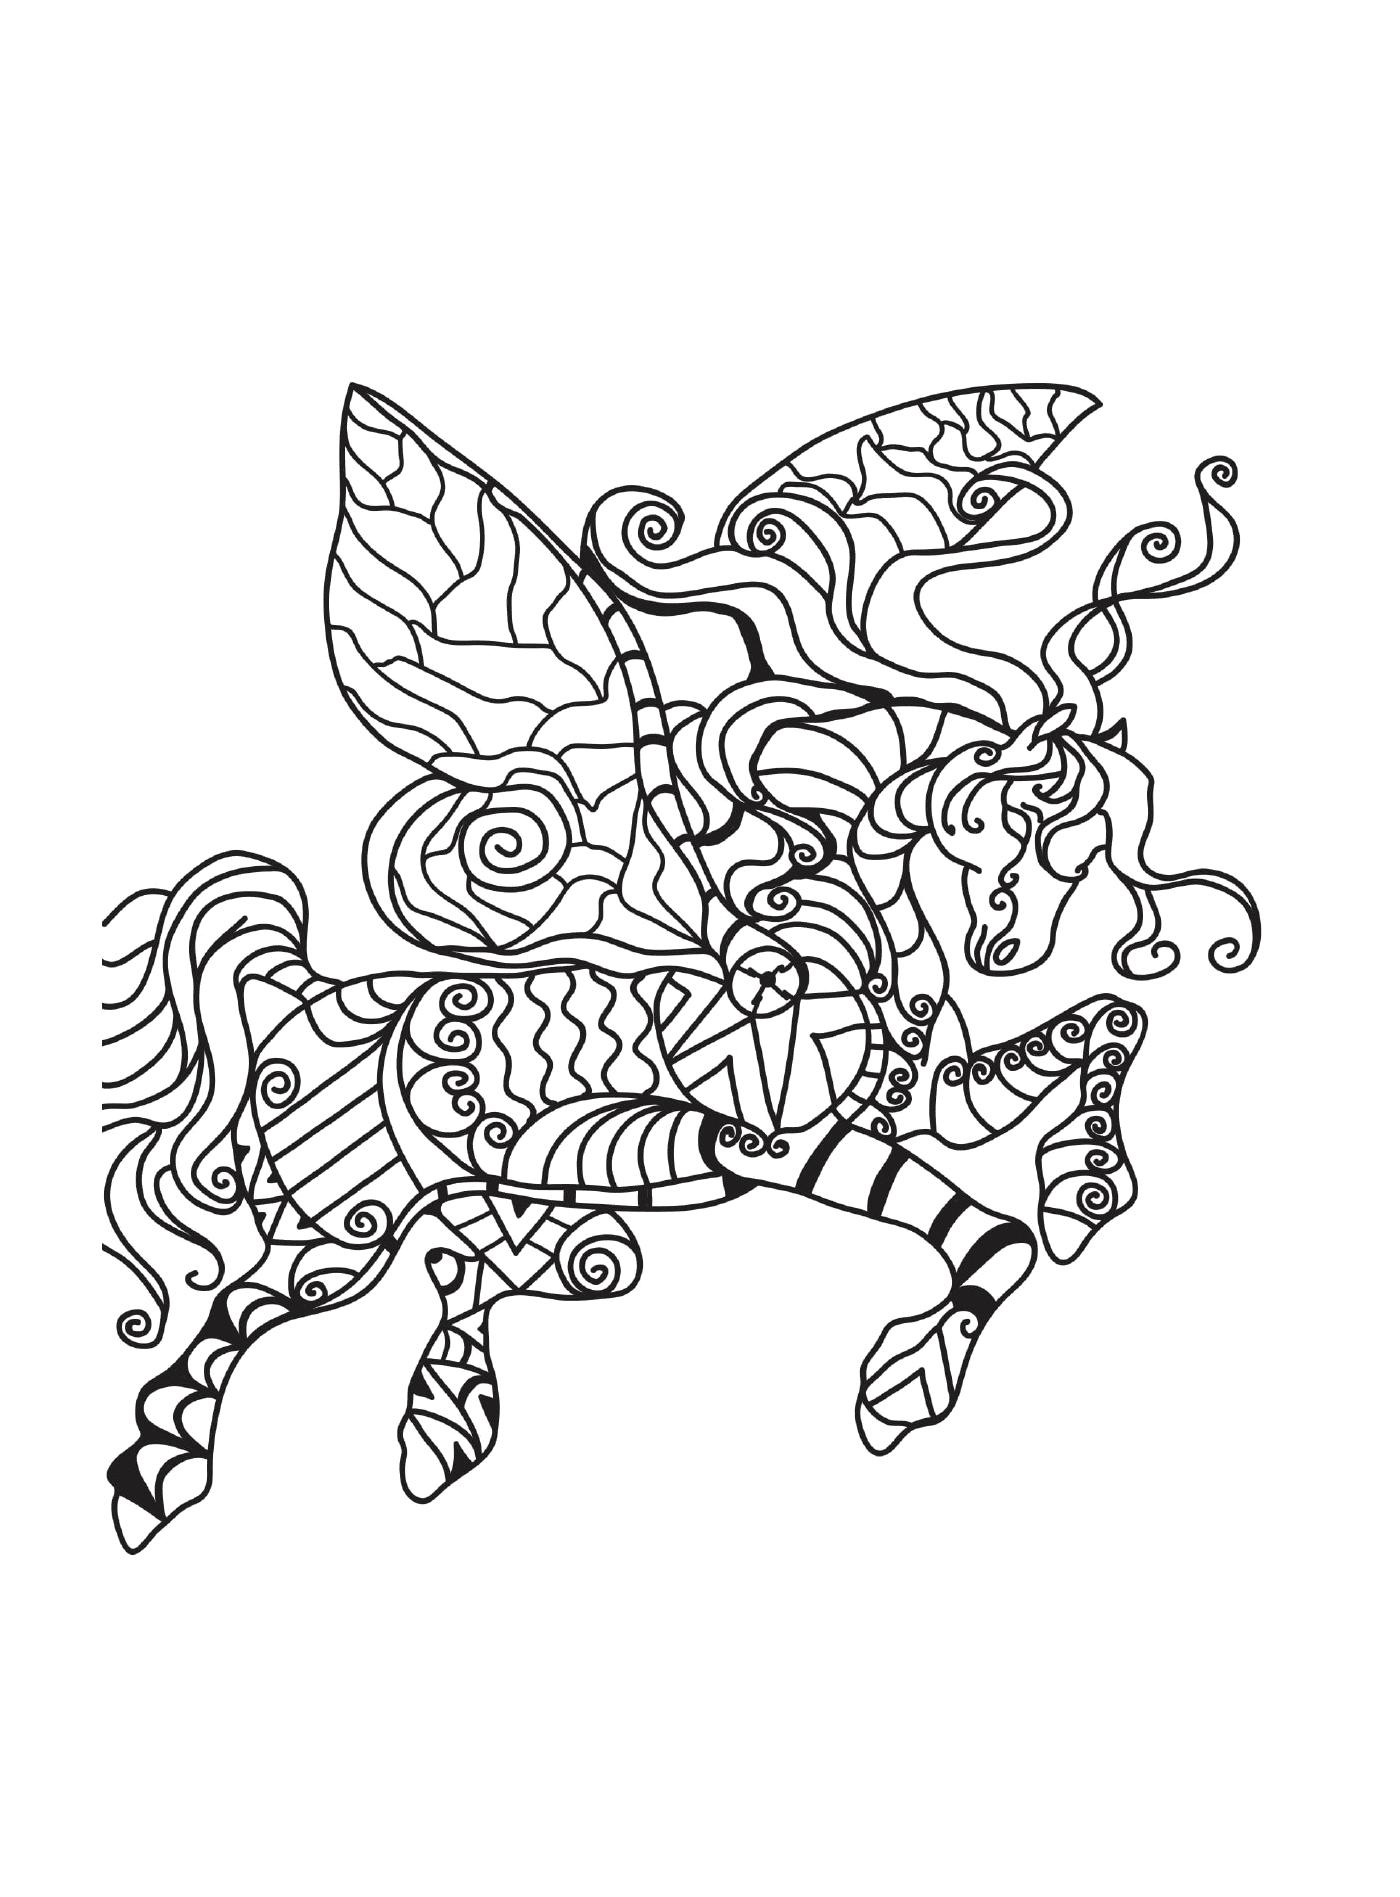  Лошадь с крыльями бабочки 